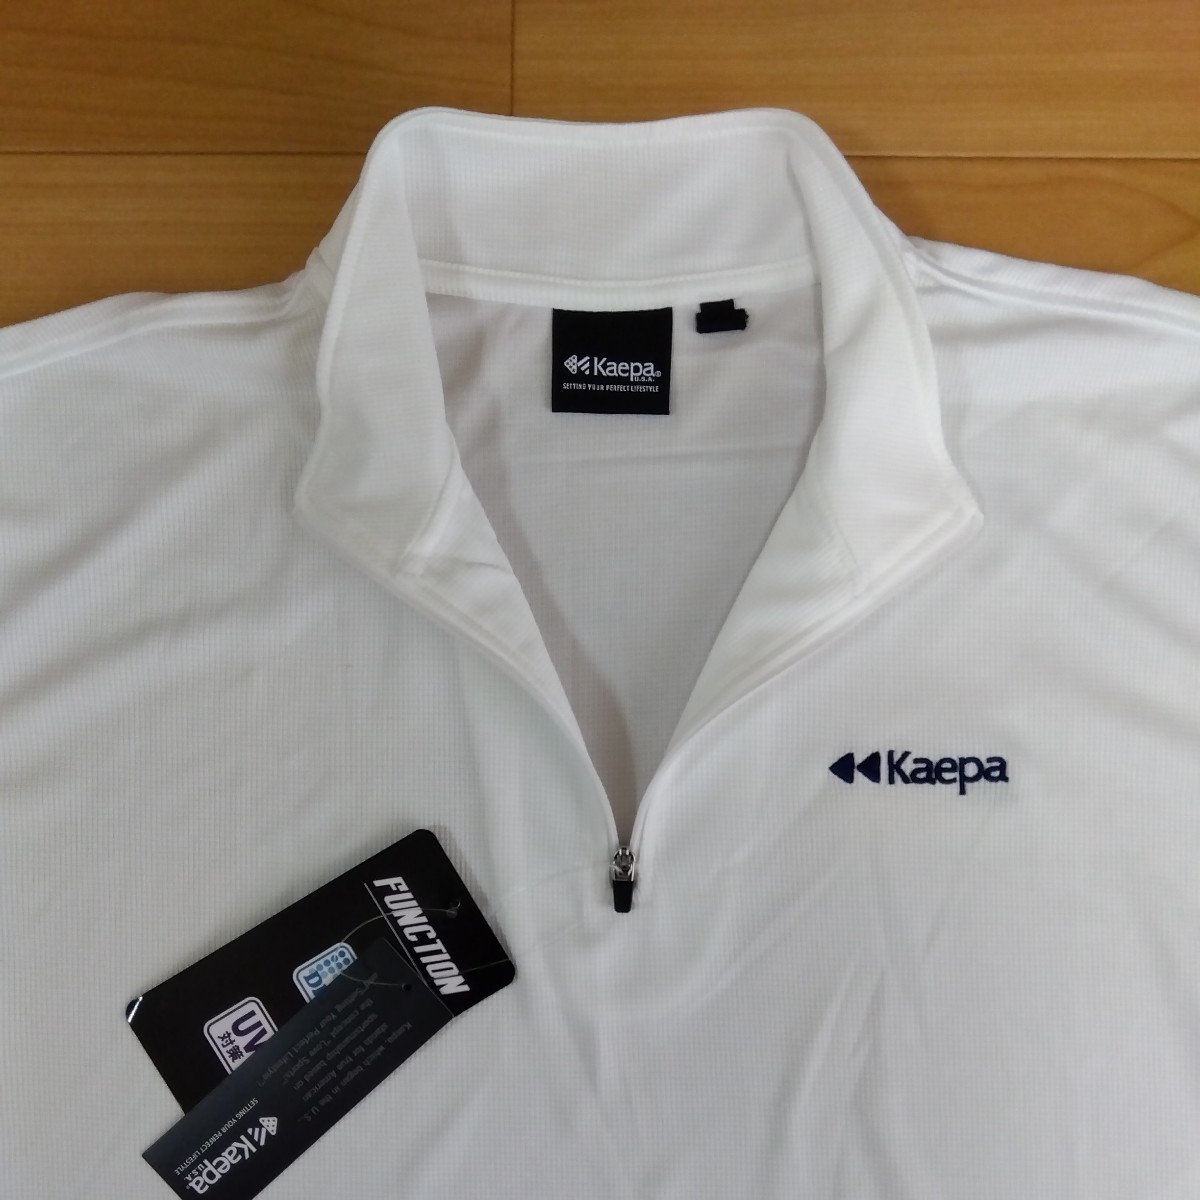 M ①Kaepa ケイパ 新品 半袖ポロシャツ 襟付きトップス ハーフジップ 白 メンズ紳士 アウトドア スポーツ ゴルフウェア ドライ UV対策 golfの画像3